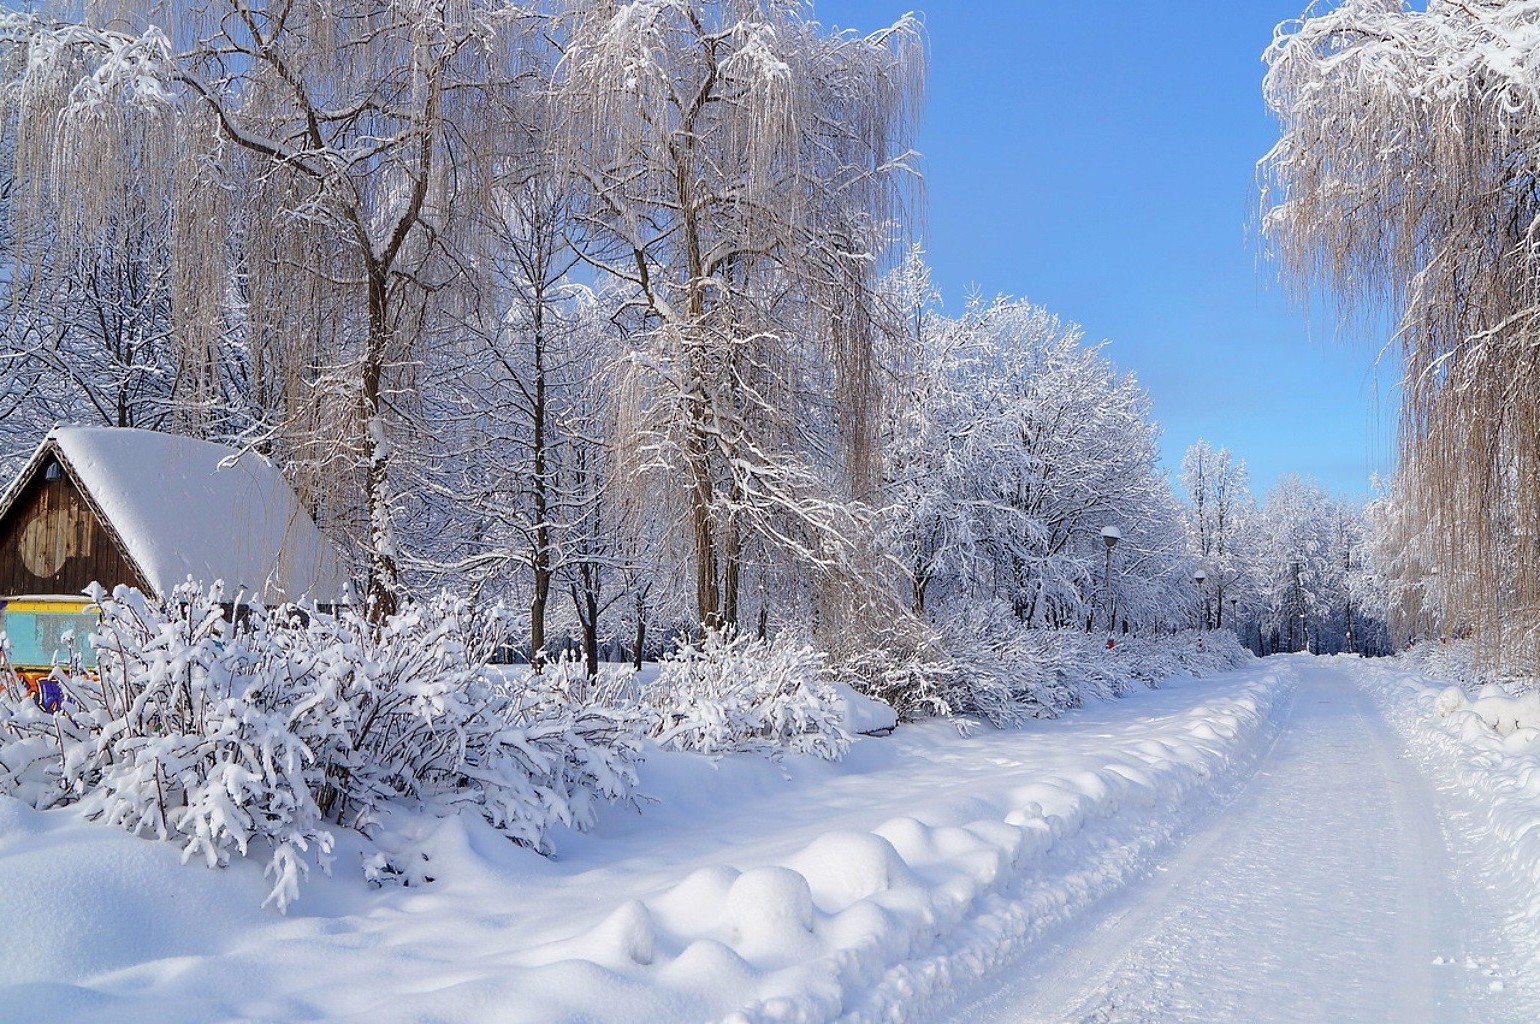 зима снег холодная мороз замороженные лед древесины морозный погода снежное сезон сугроб дерево пургу снег-белый пейзаж холодок живописный